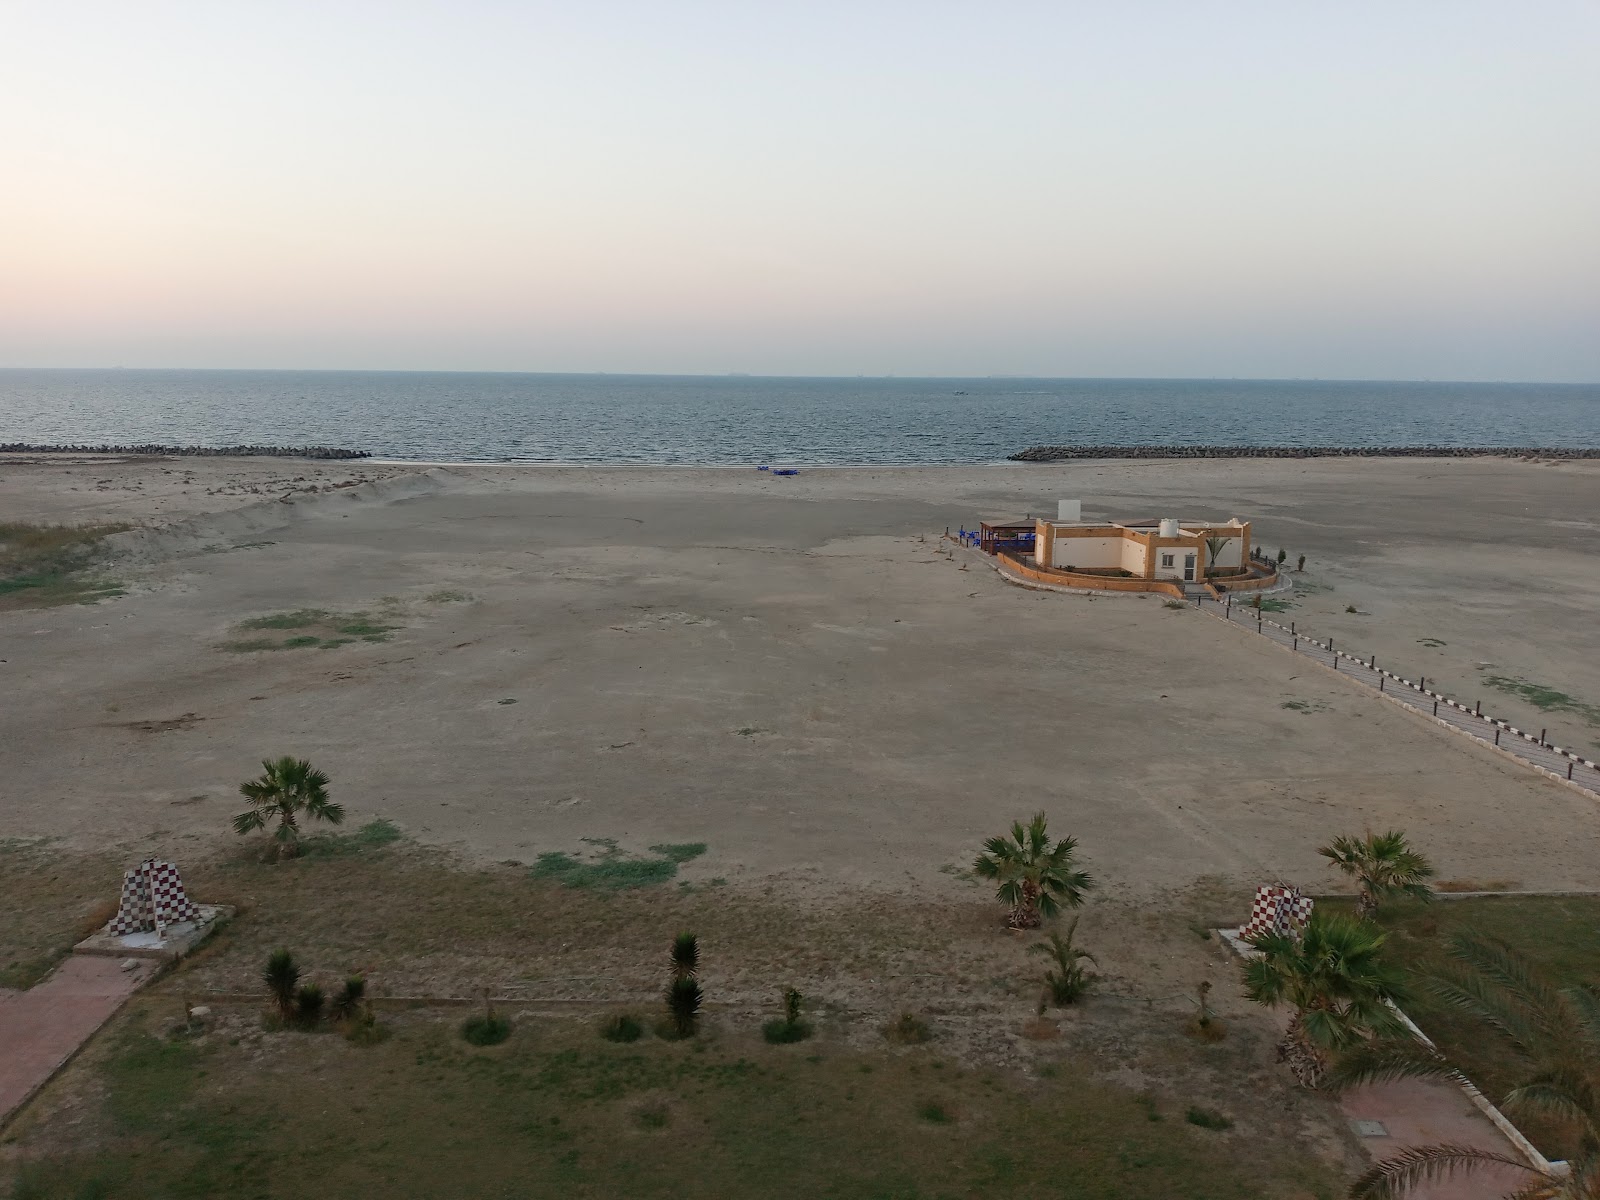 Al Abtal Beach'in fotoğrafı parlak kum yüzey ile